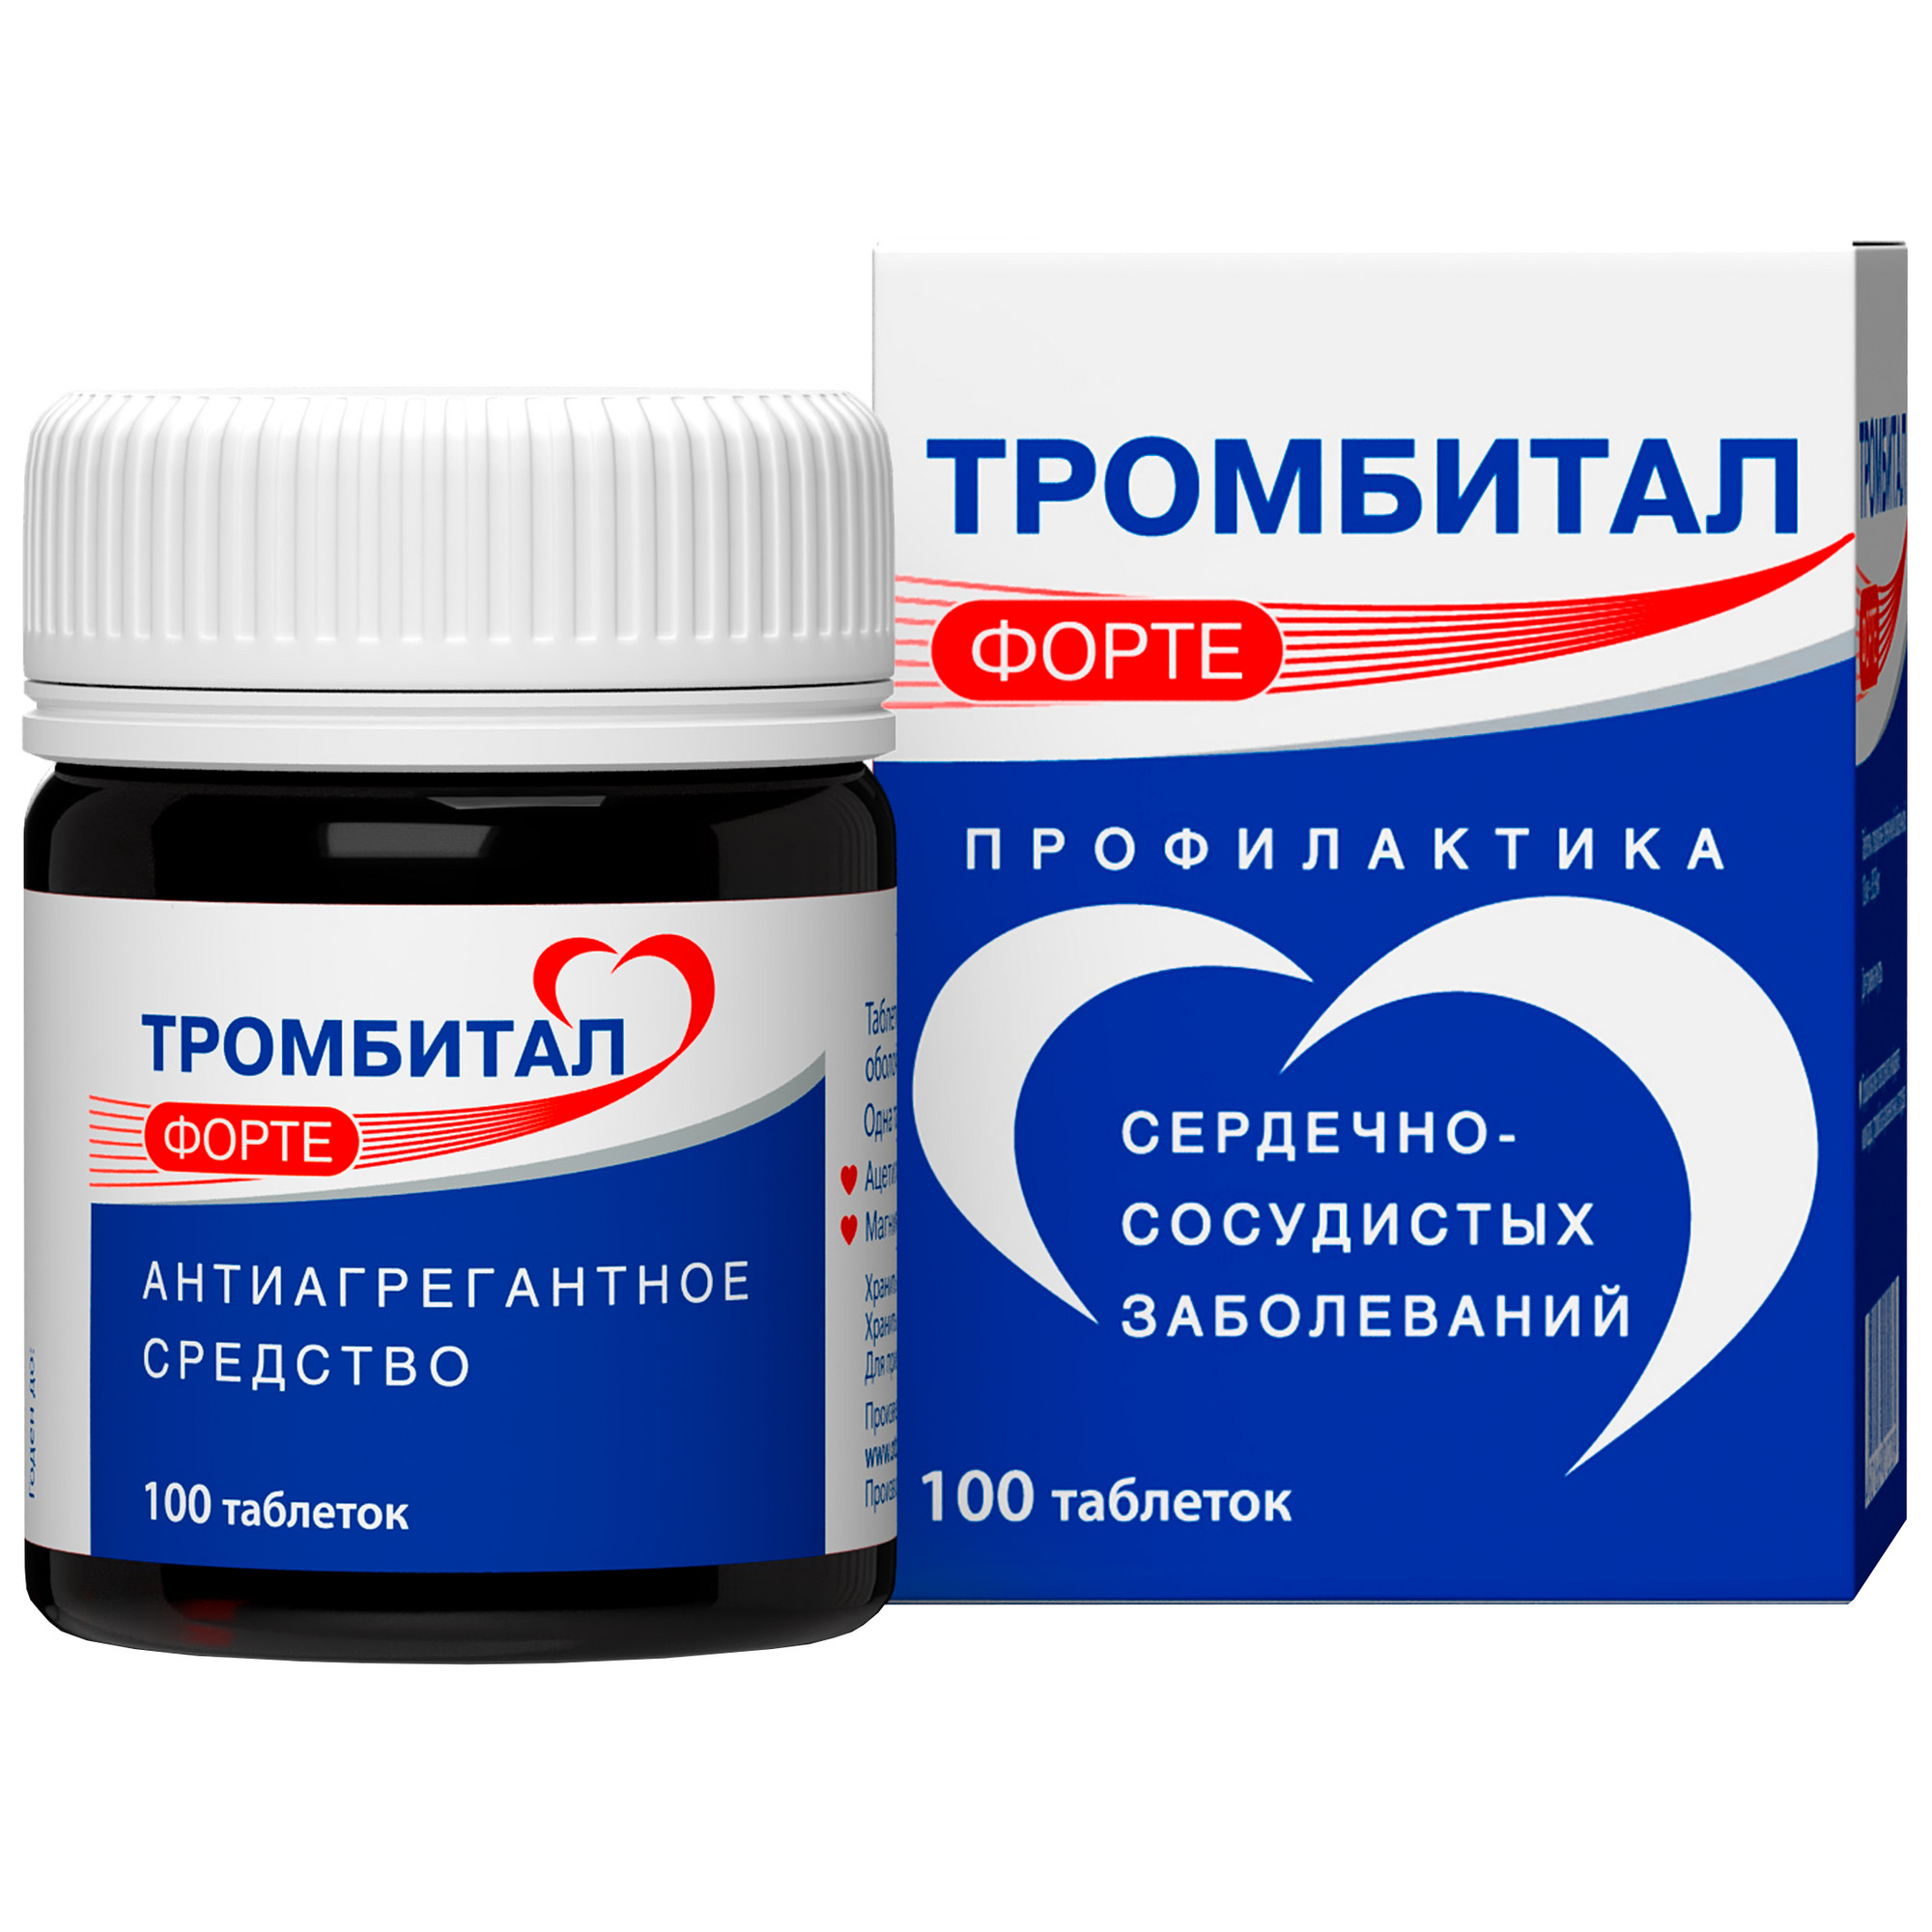 Тромбитал Форте, таблетки в пленочной оболочке 150 мг+30.39 мг, 100 шт.